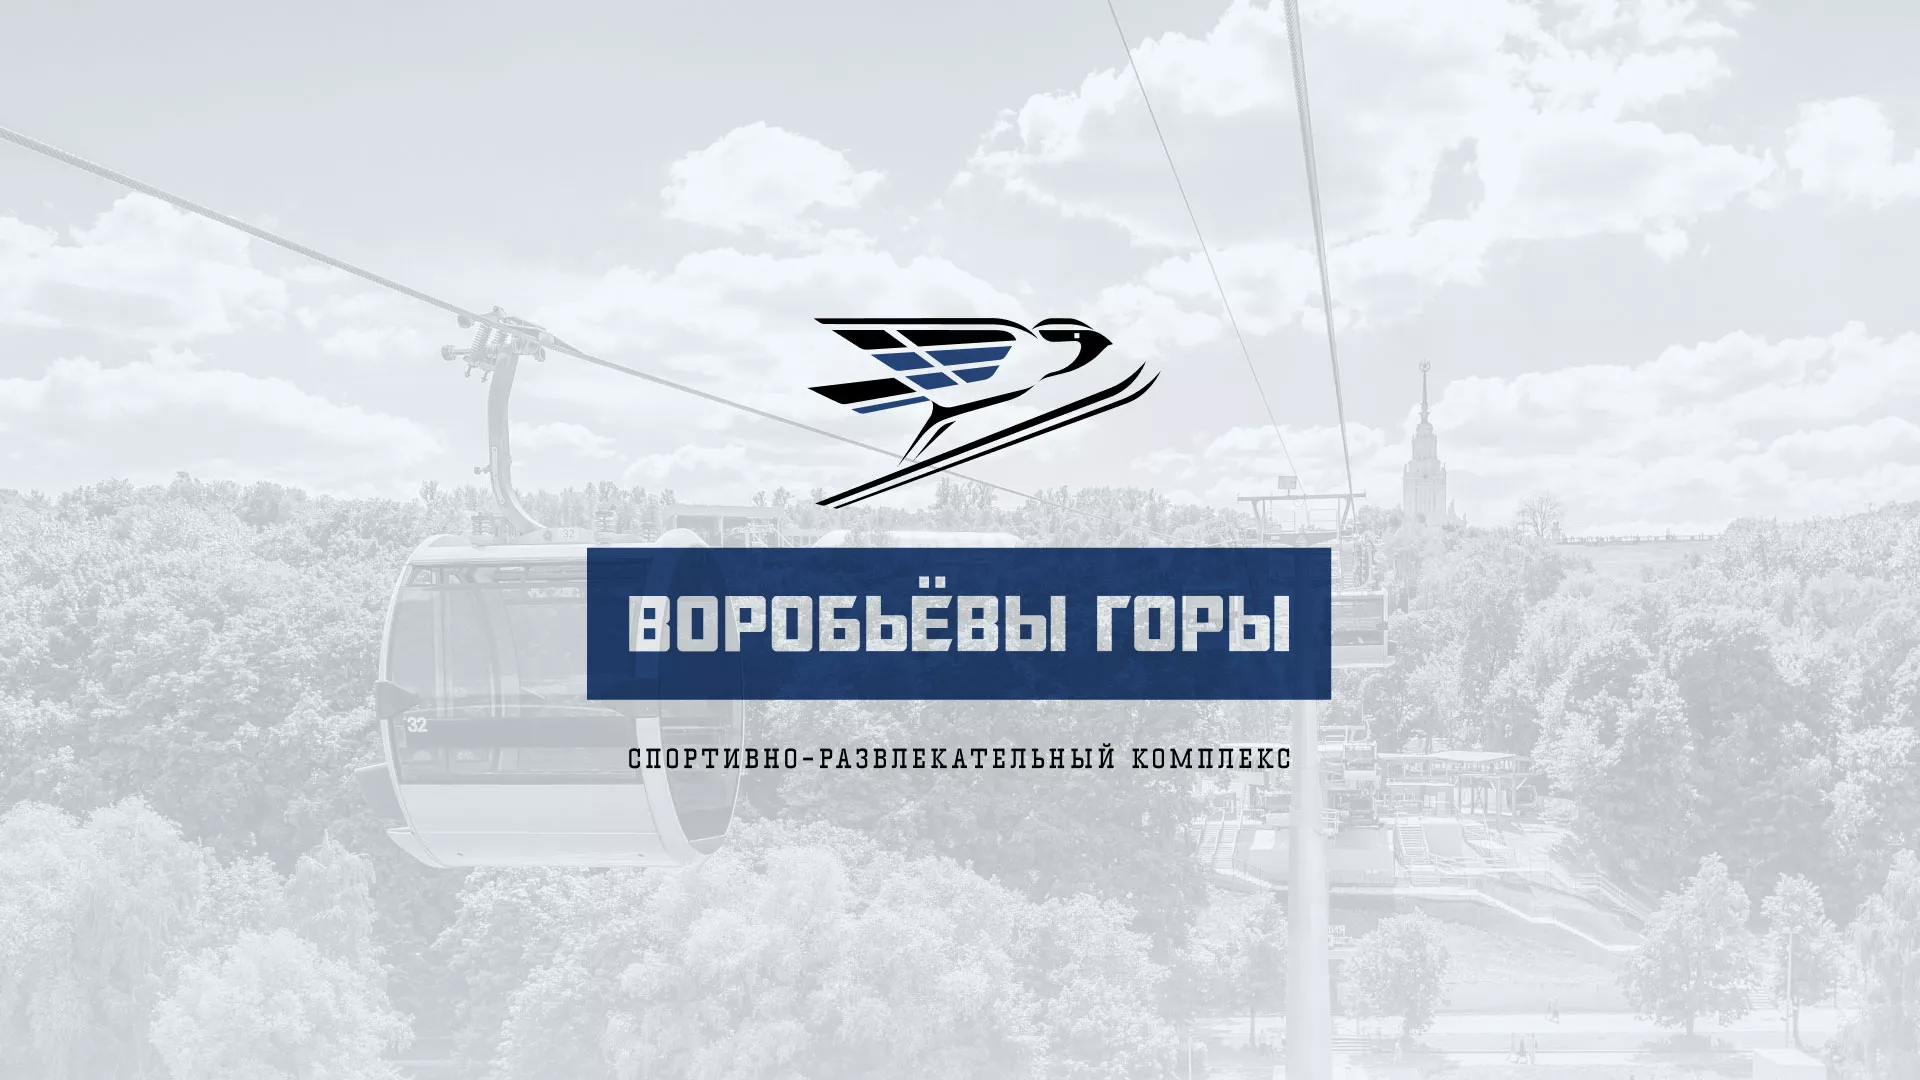 Разработка сайта в Нижнеудинске для спортивно-развлекательного комплекса «Воробьёвы горы»